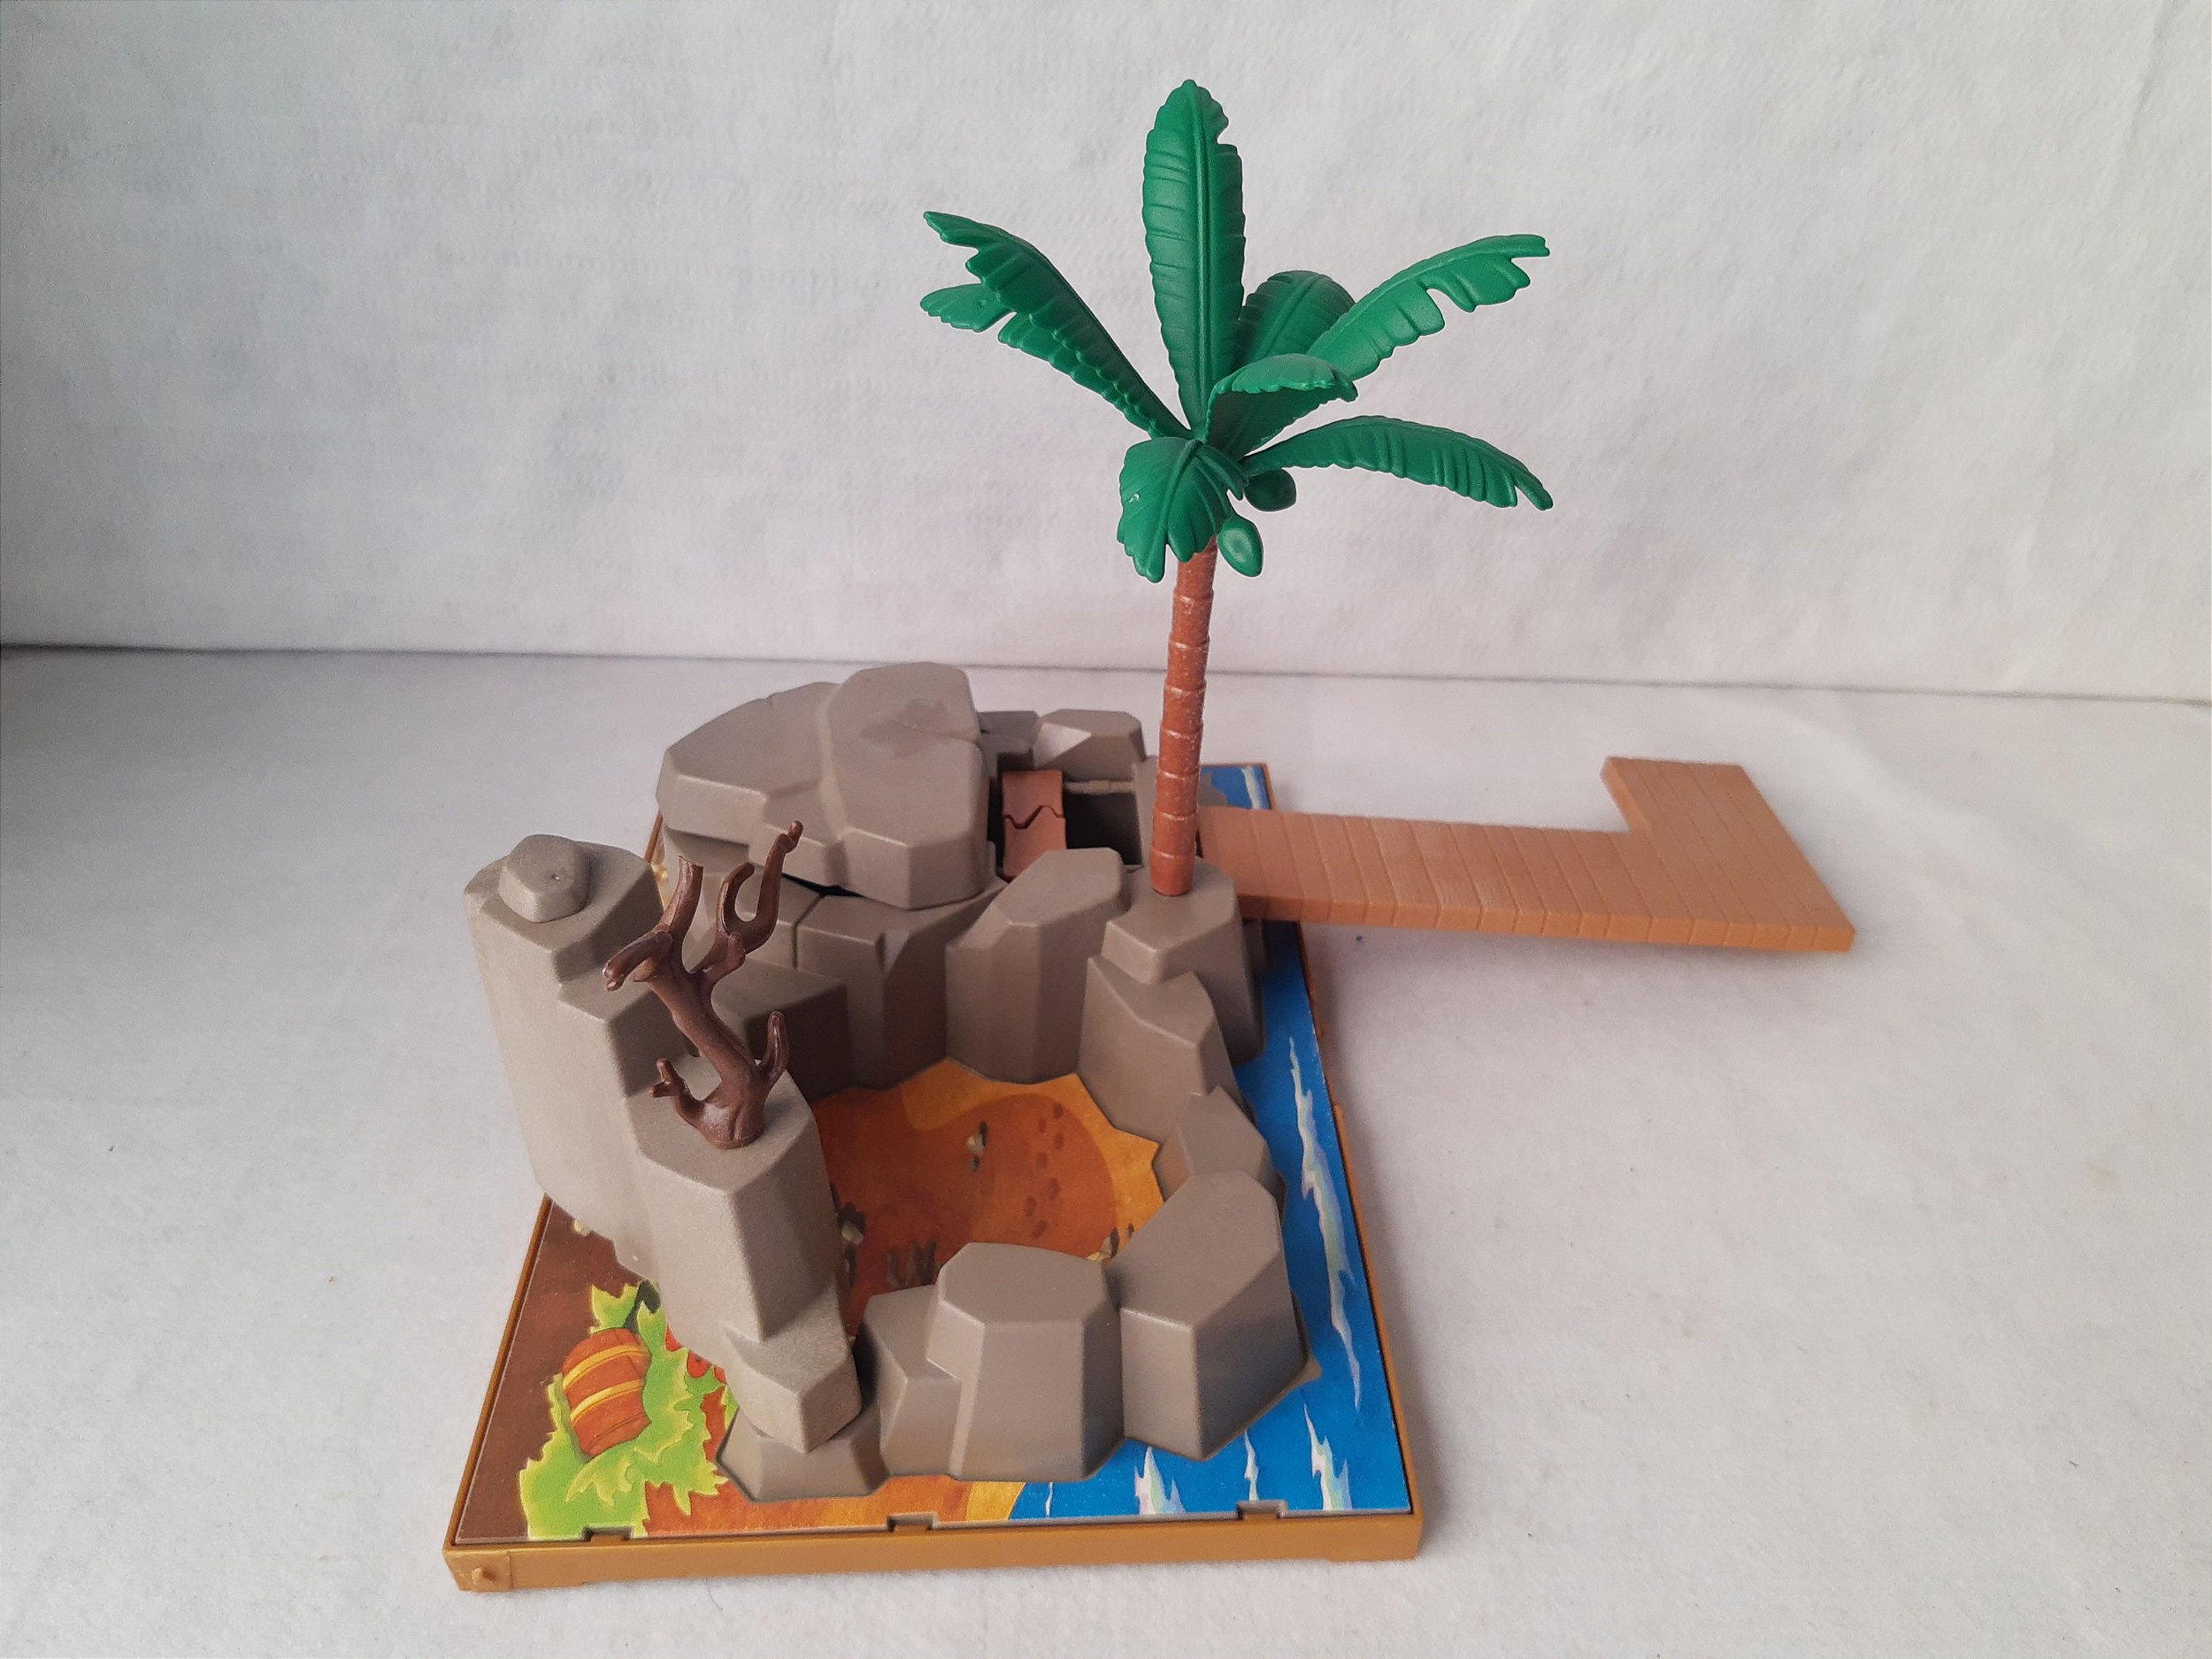 Playmobil 5737 baú do tesouro parcial, ilha com coqueiro - Taffy Shop -  Brechó de brinquedos